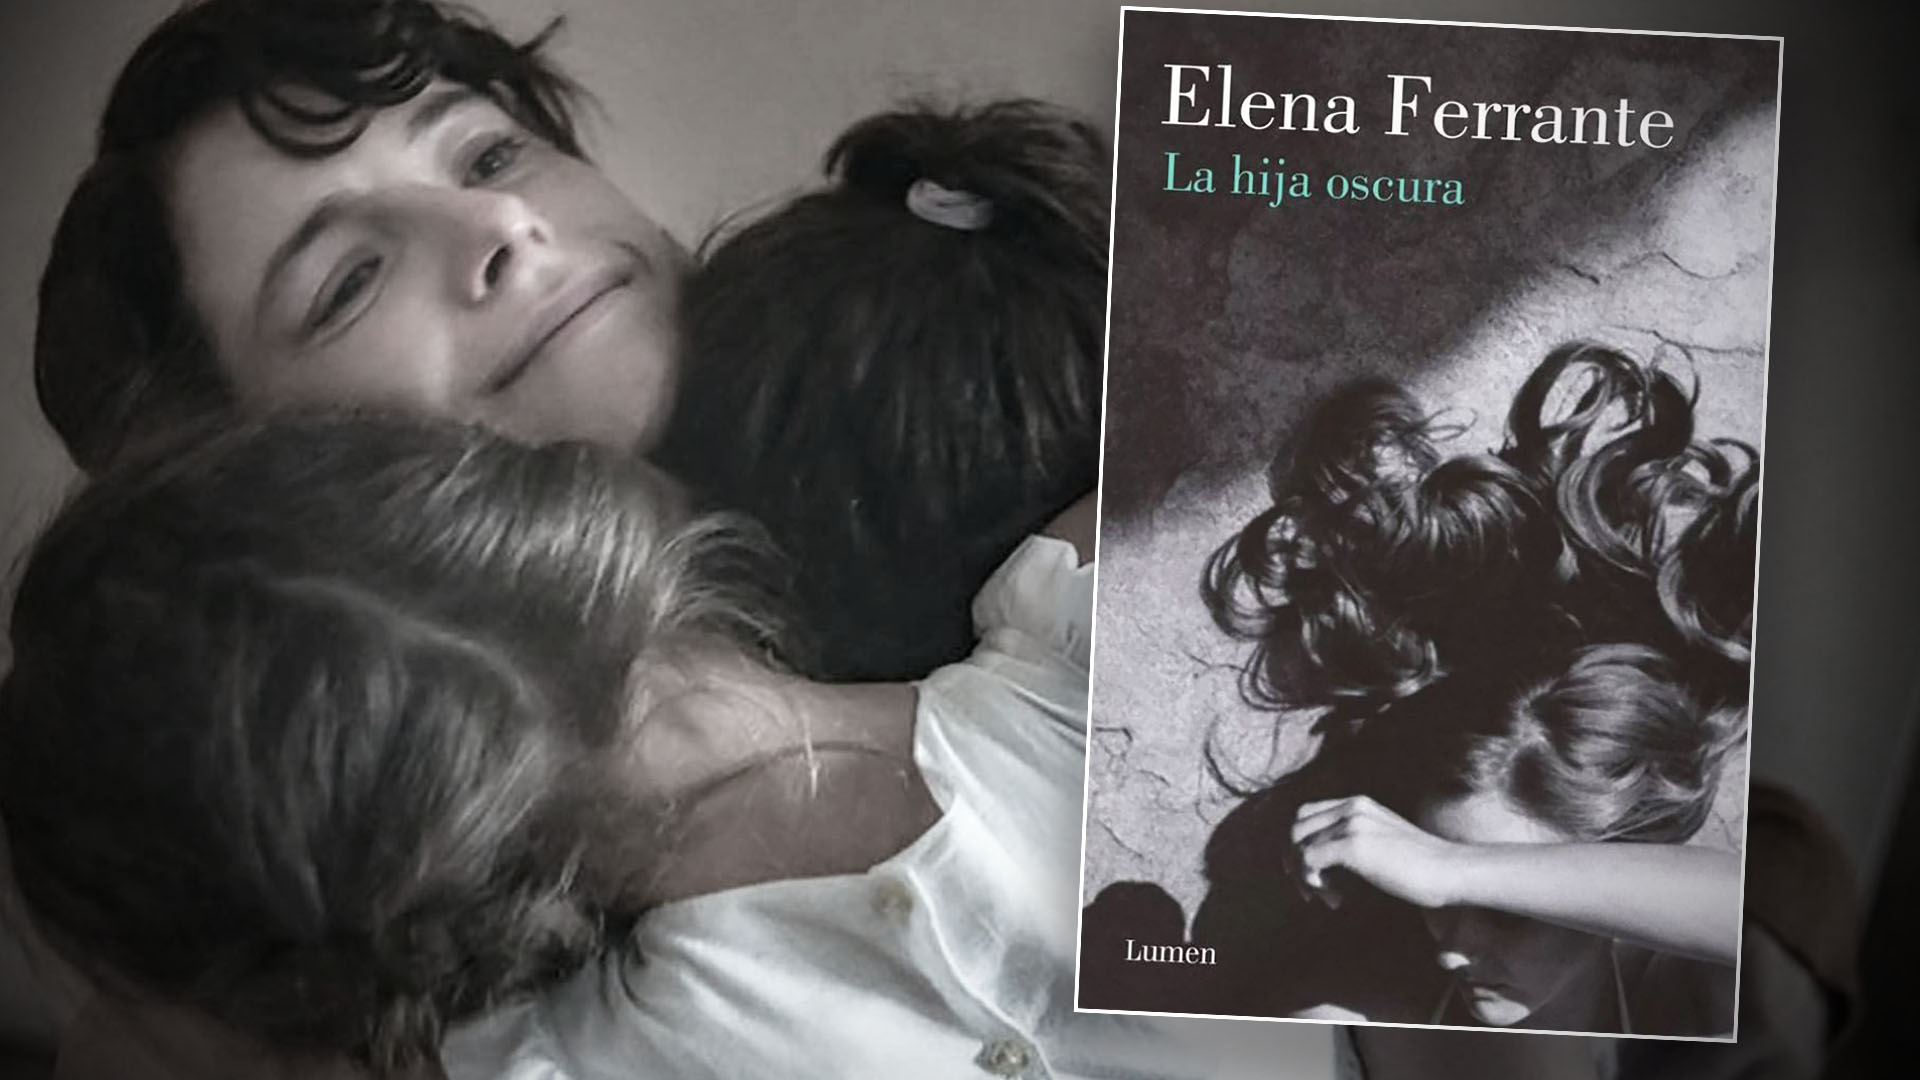 Secretos de la novela de Elena Ferrante que inspiró “La hija oscura”, película taquillera de Netflix  